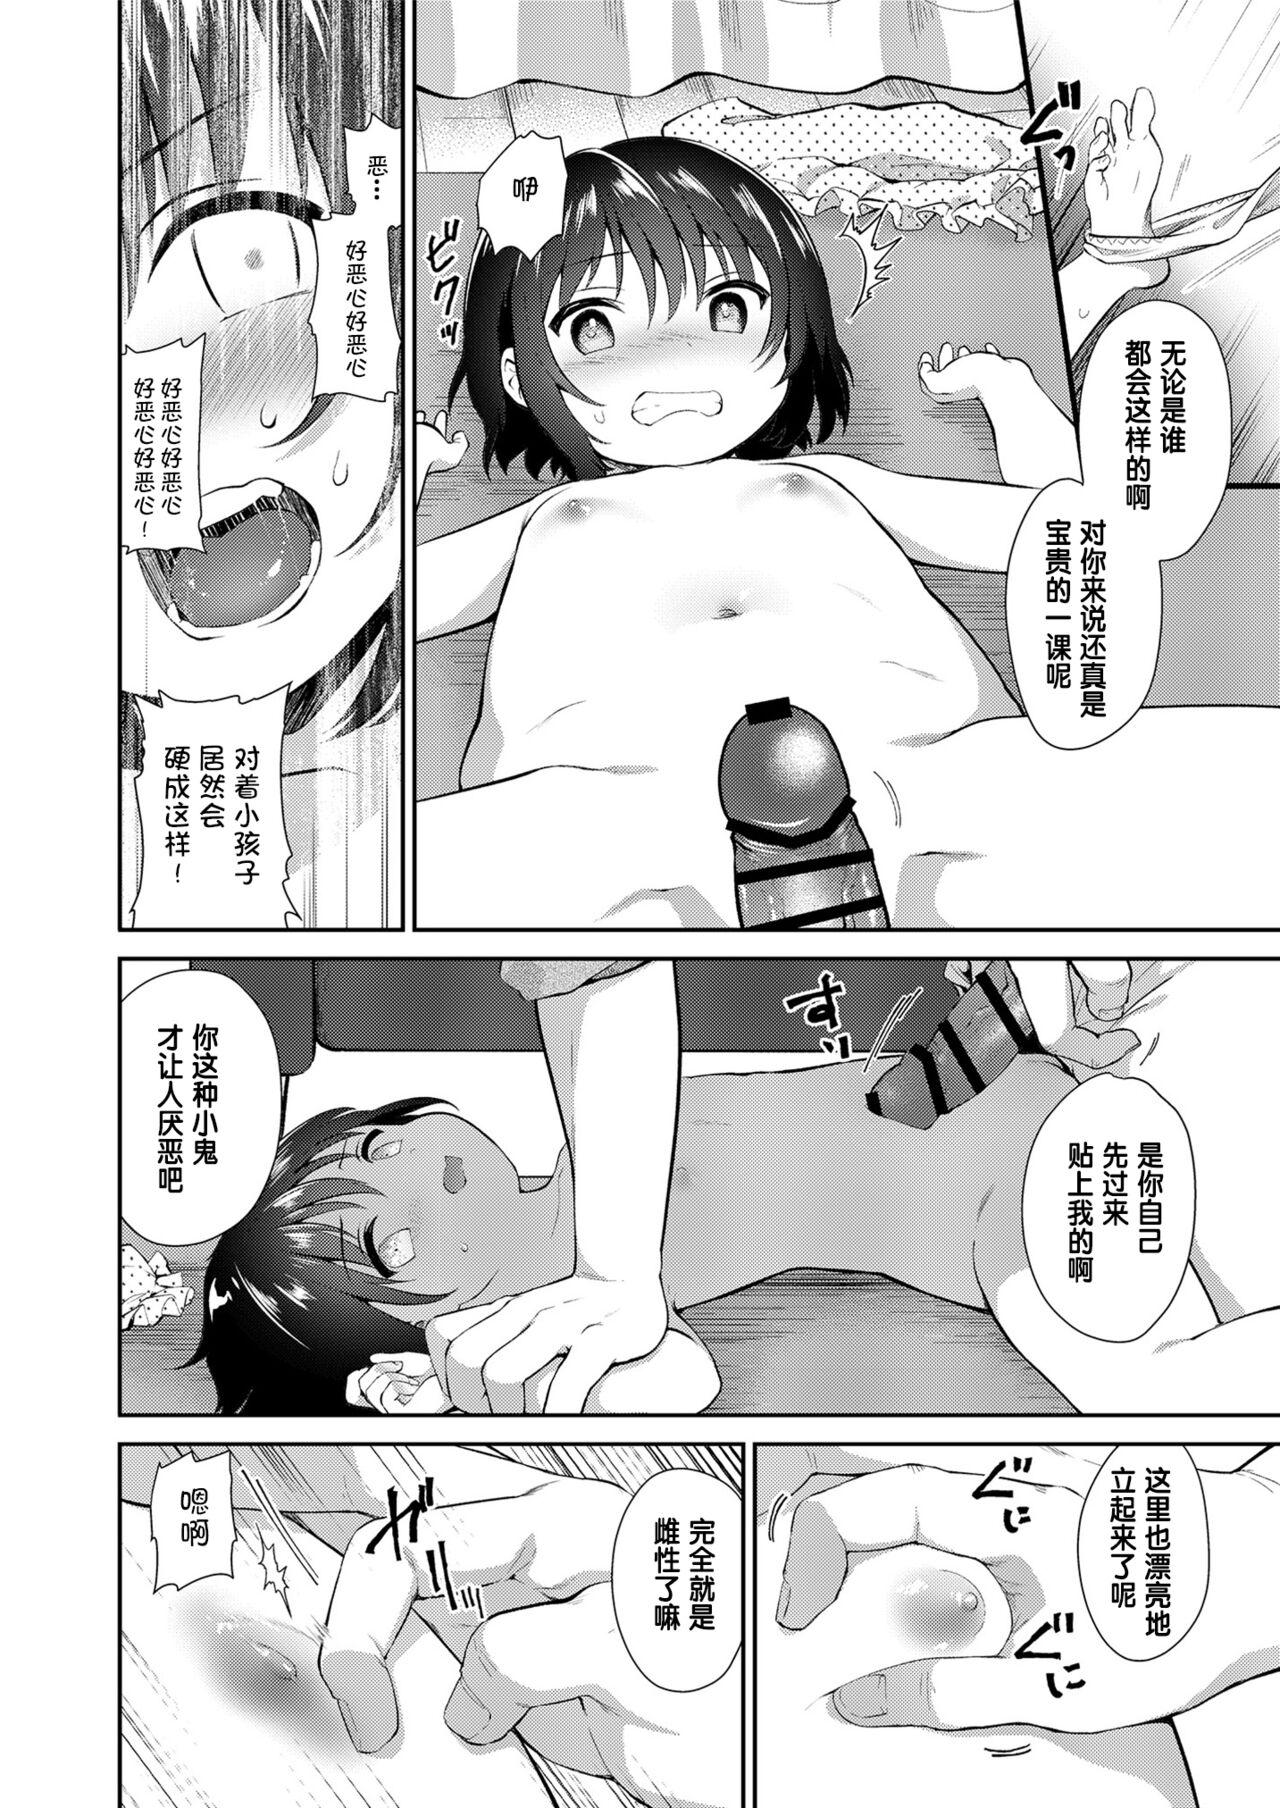 Transexual Mei ga Warui kara Shikatanai. - Original Butt - Page 8